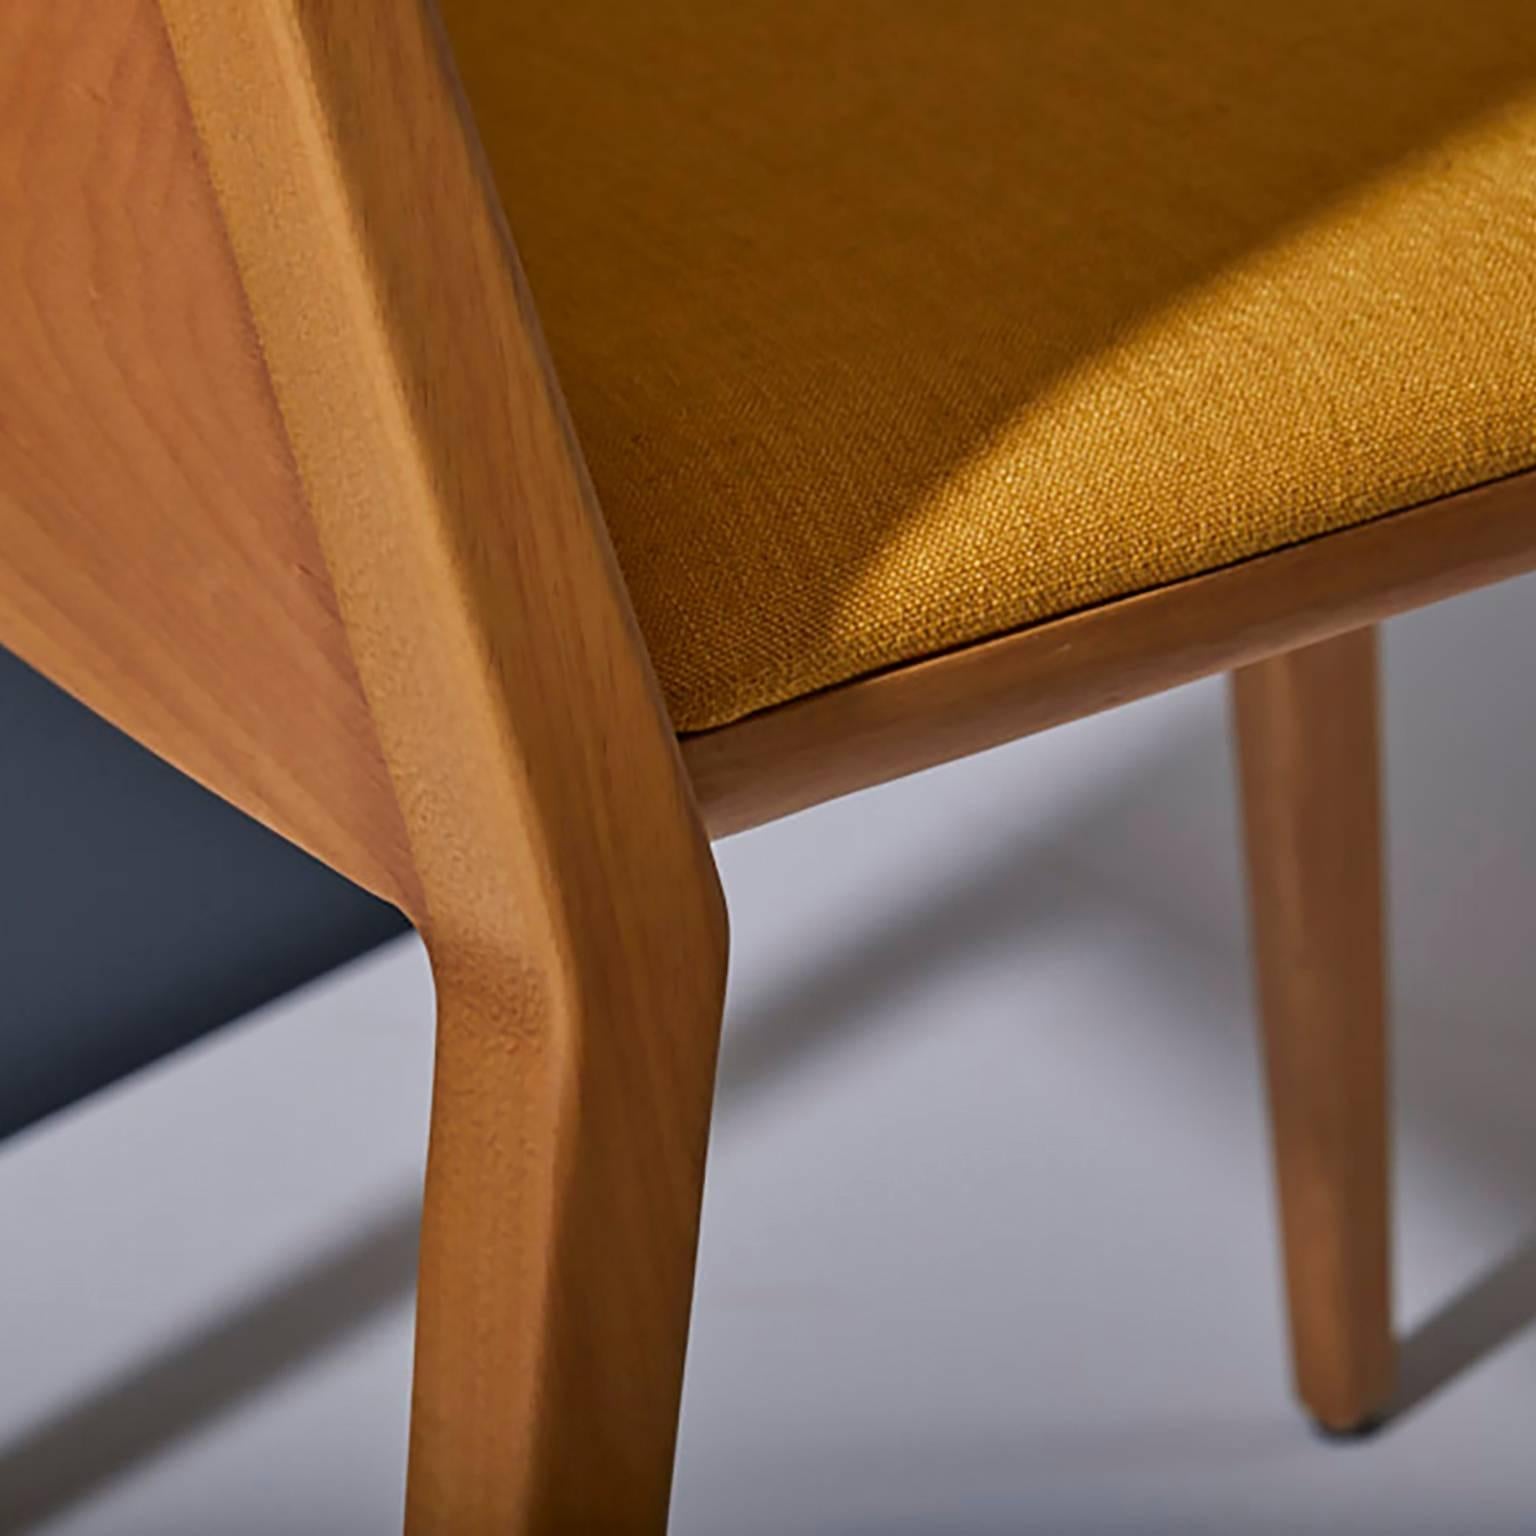 La collection de chaises à oreilles en bois massif, la flexibilité, l'esthétique moderne, le confort et la douceur sont les maîtres mots de cette collection. Le concept s'inspire du design de l'avion B-52, cette inspiration nous a donné la liberté